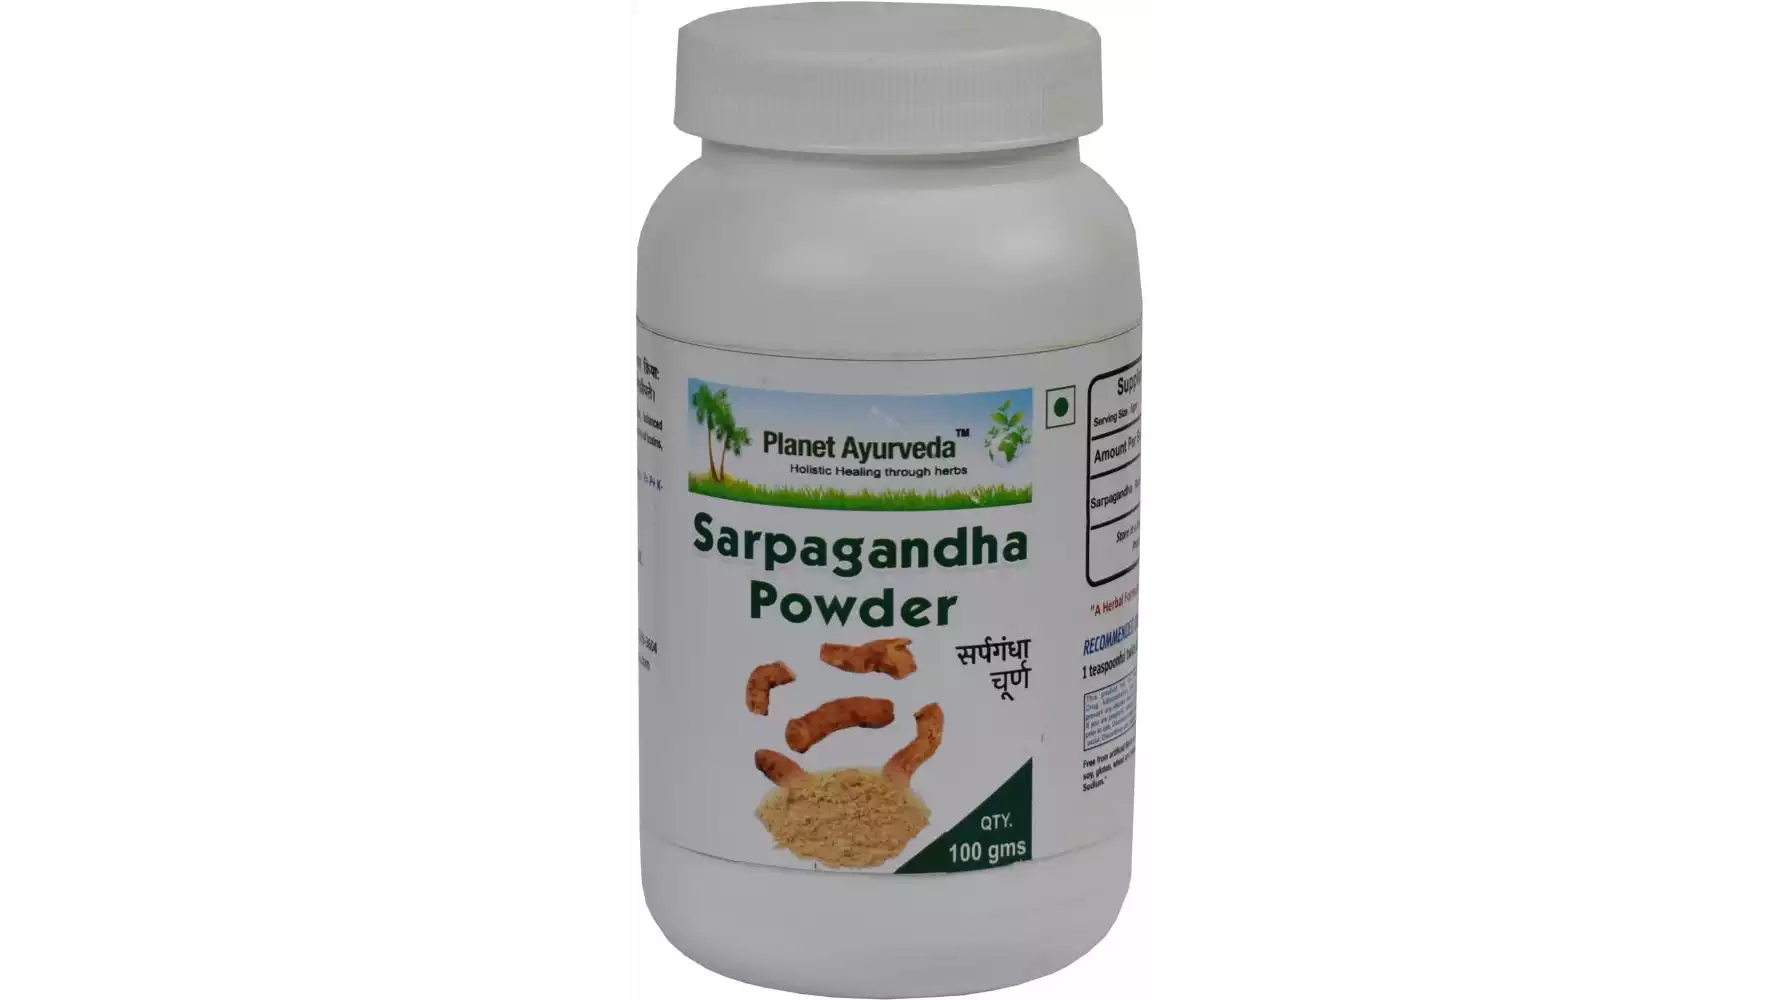 Planet Ayurveda Sarpagandha Powder (100g, Pack of 2)